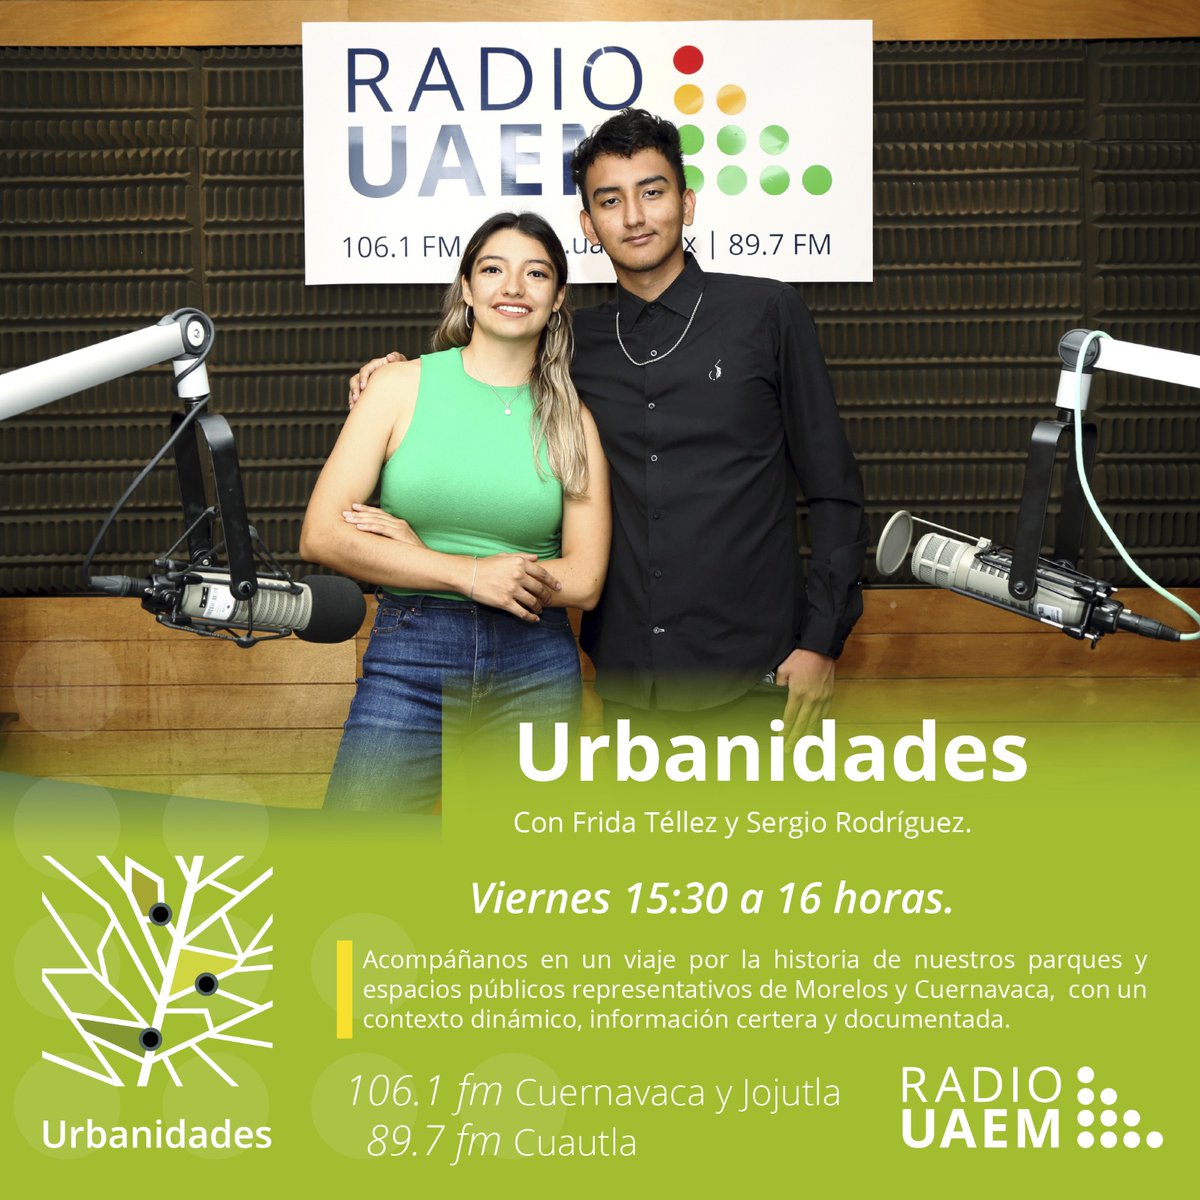 'Urbanidades' programa en @radiouaem todos los viernes a partir de las 15:30 horas con Frida Téllez y Sergio Rodríguez en las frecuencias 106.1 en Cuernavaca y Jojutla, y 89.7 en Cuautla | Consulta la programación en radio.uaem.mx | #SomosRadioPúblicaUniversitaria📻